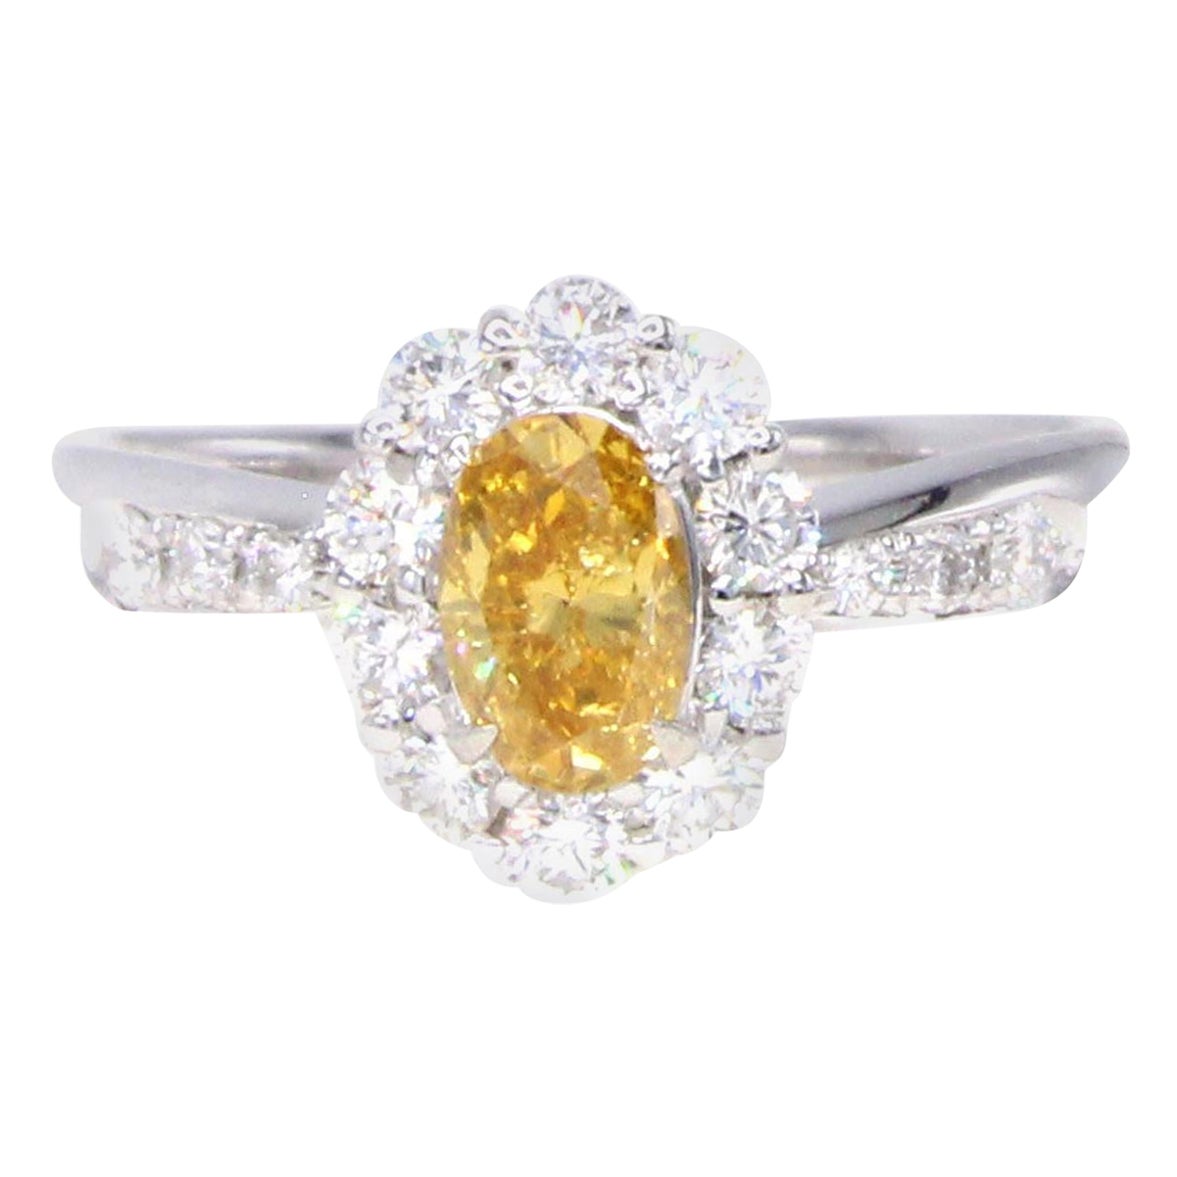 Vivid Yellow-Orange Oval Diamond and White Diamond Platinum Ring